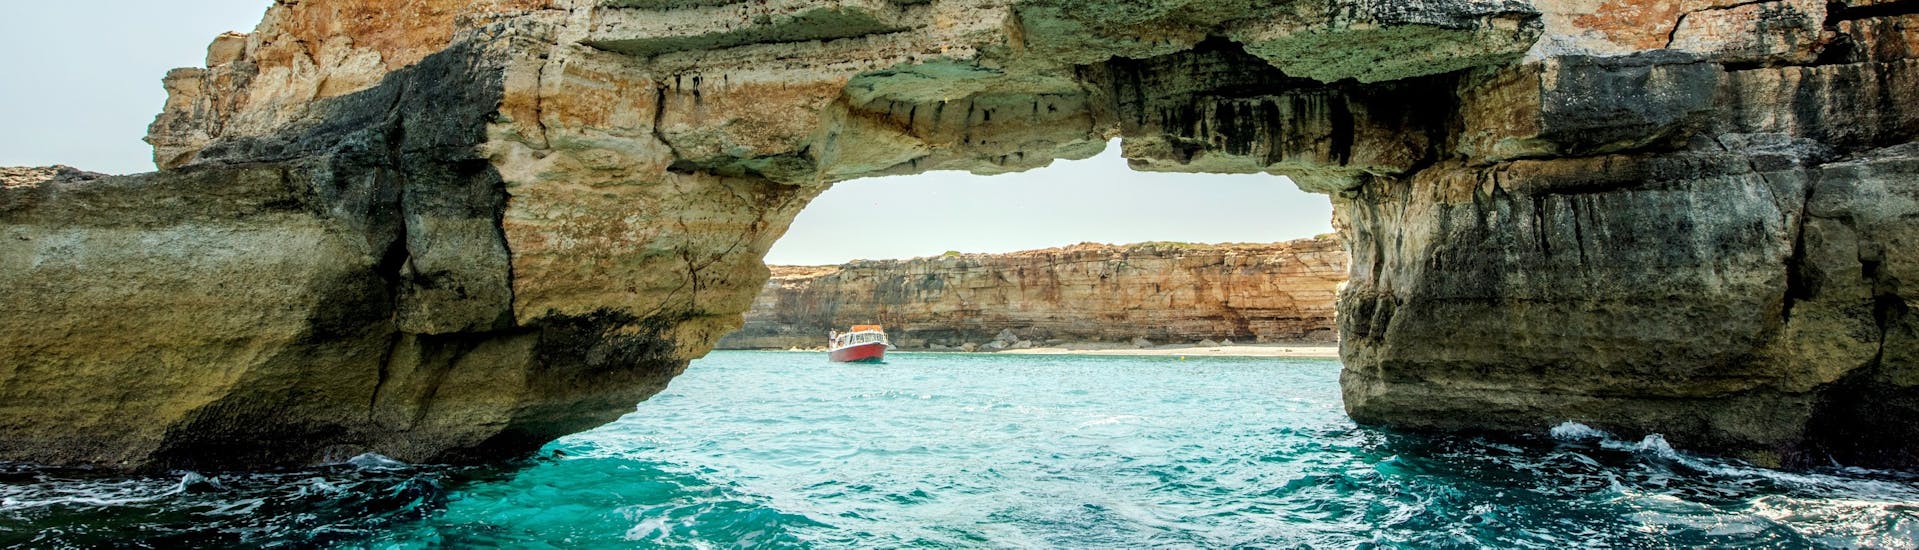 Giro in barca alla scoperta delle grotte dei pirati a Creta.